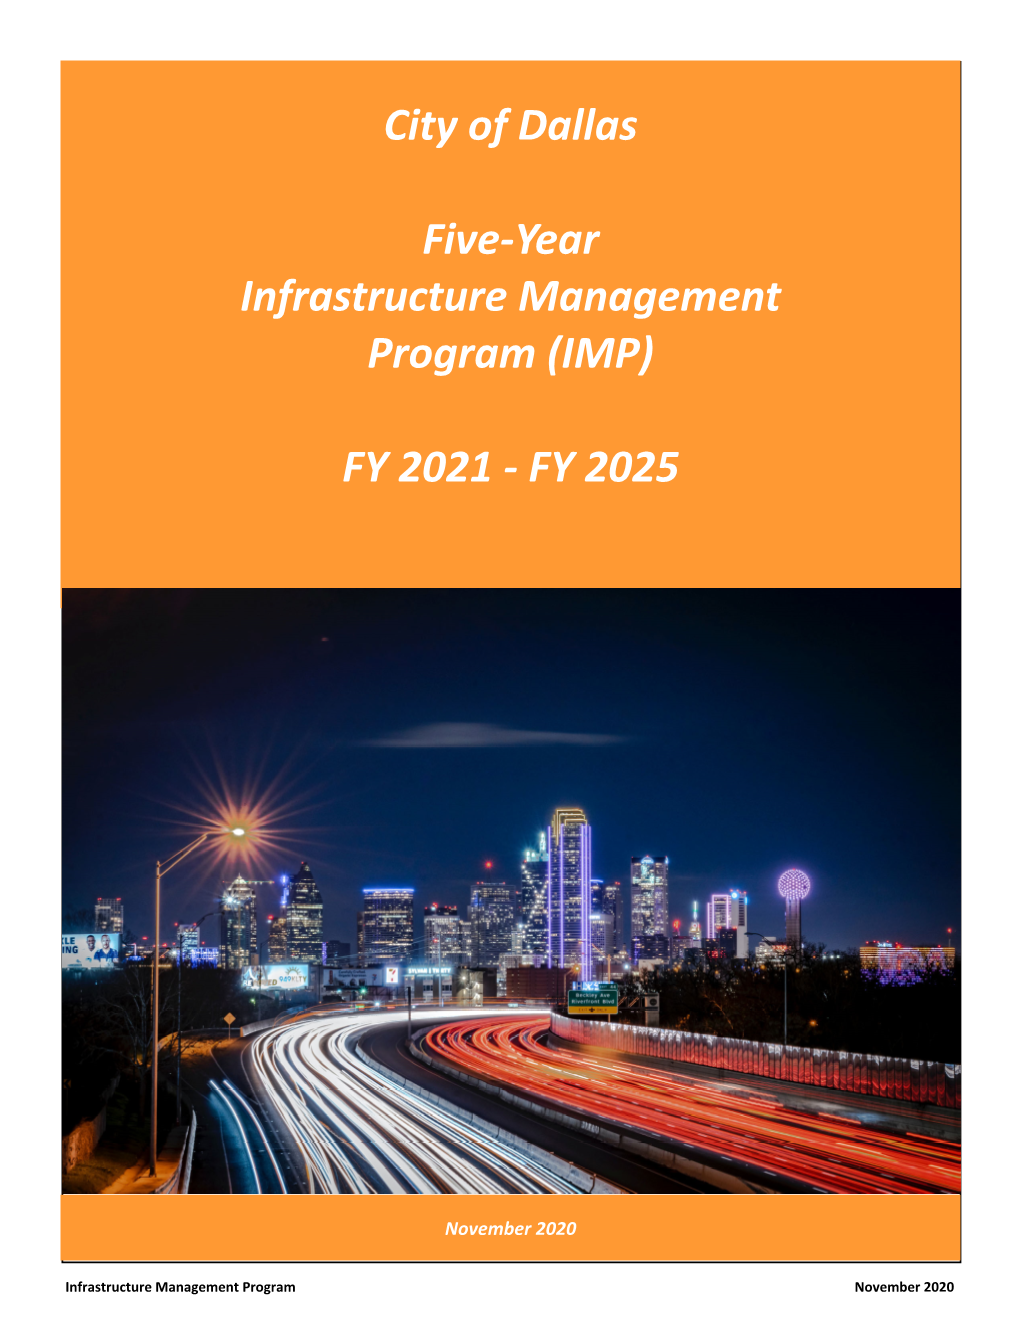 Infrastructure Management Program (IMP) FY 2021-FY 2025